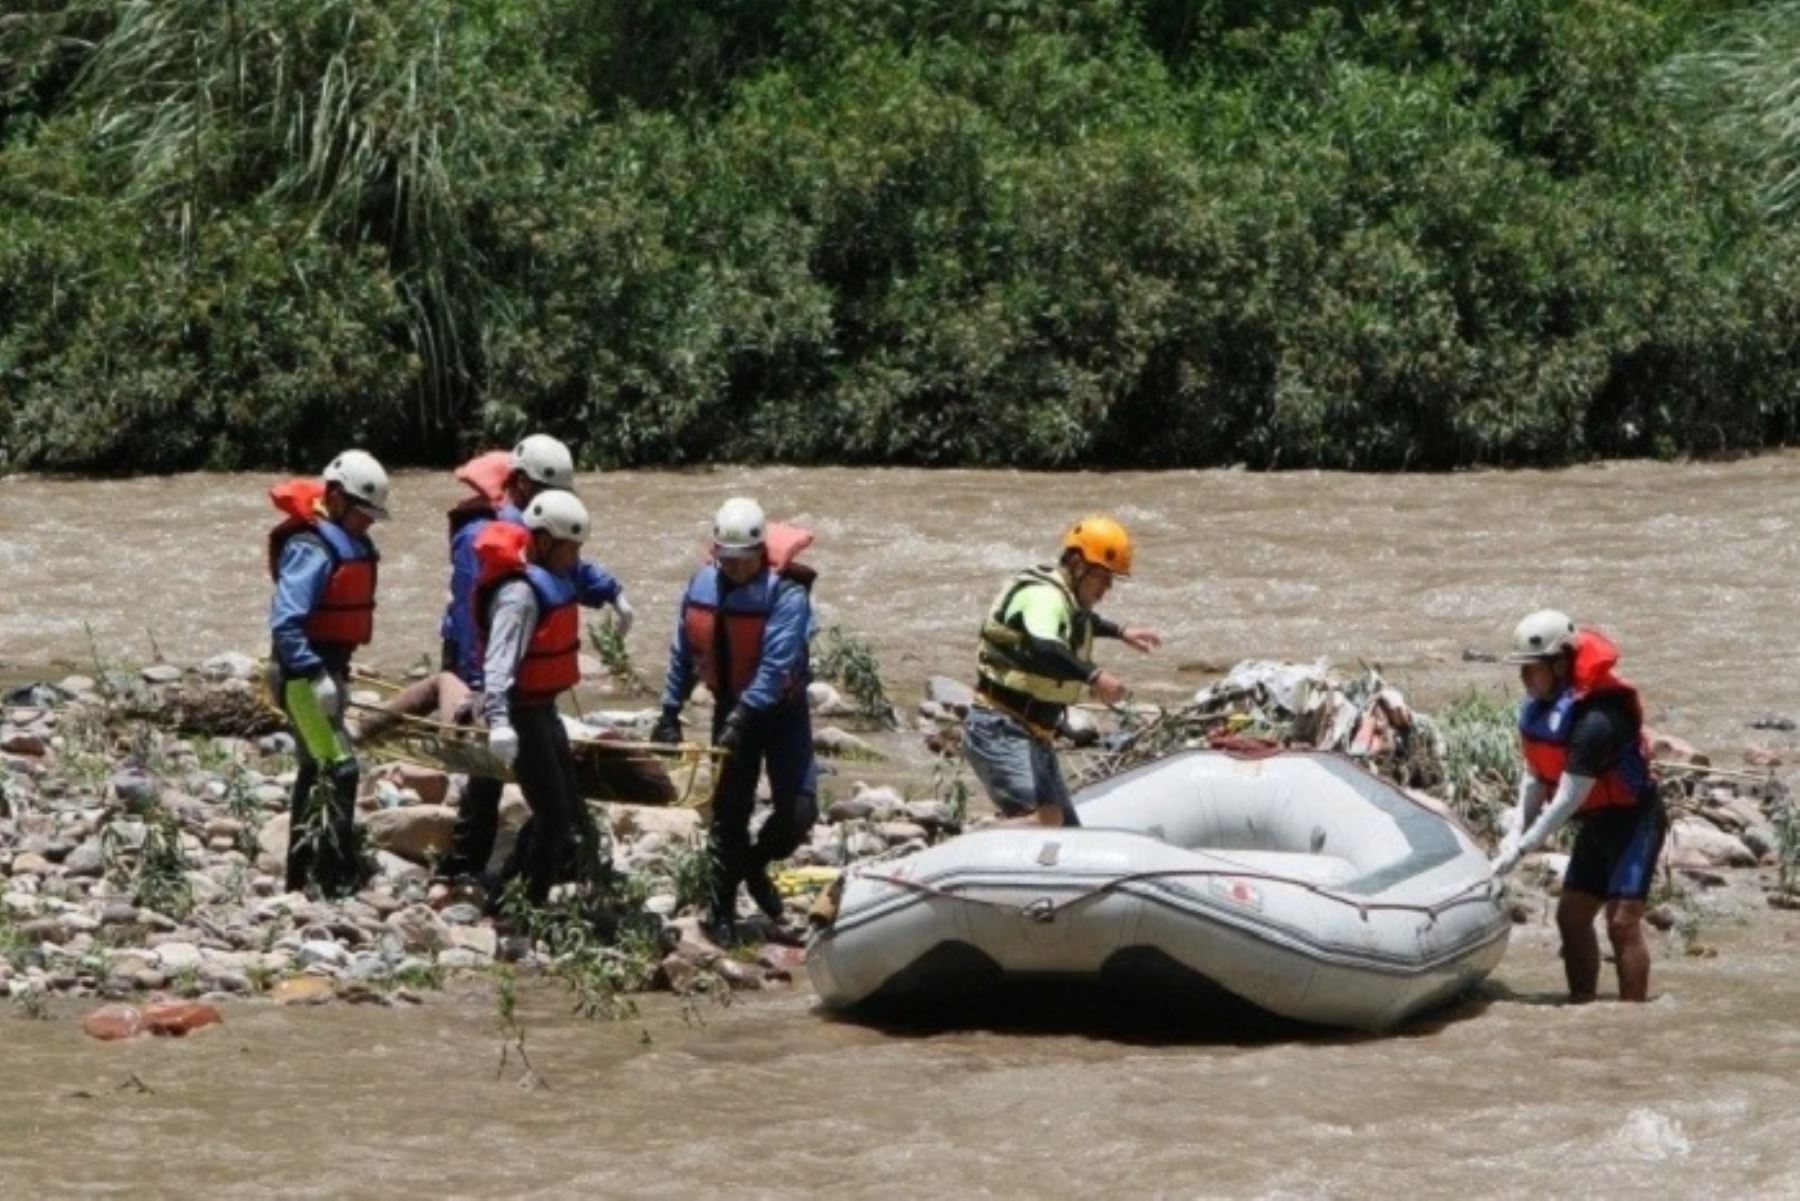 Policía intensifica la búsqueda de guía de turismo arrastrado por río en Cusco. ANDINA/archivo